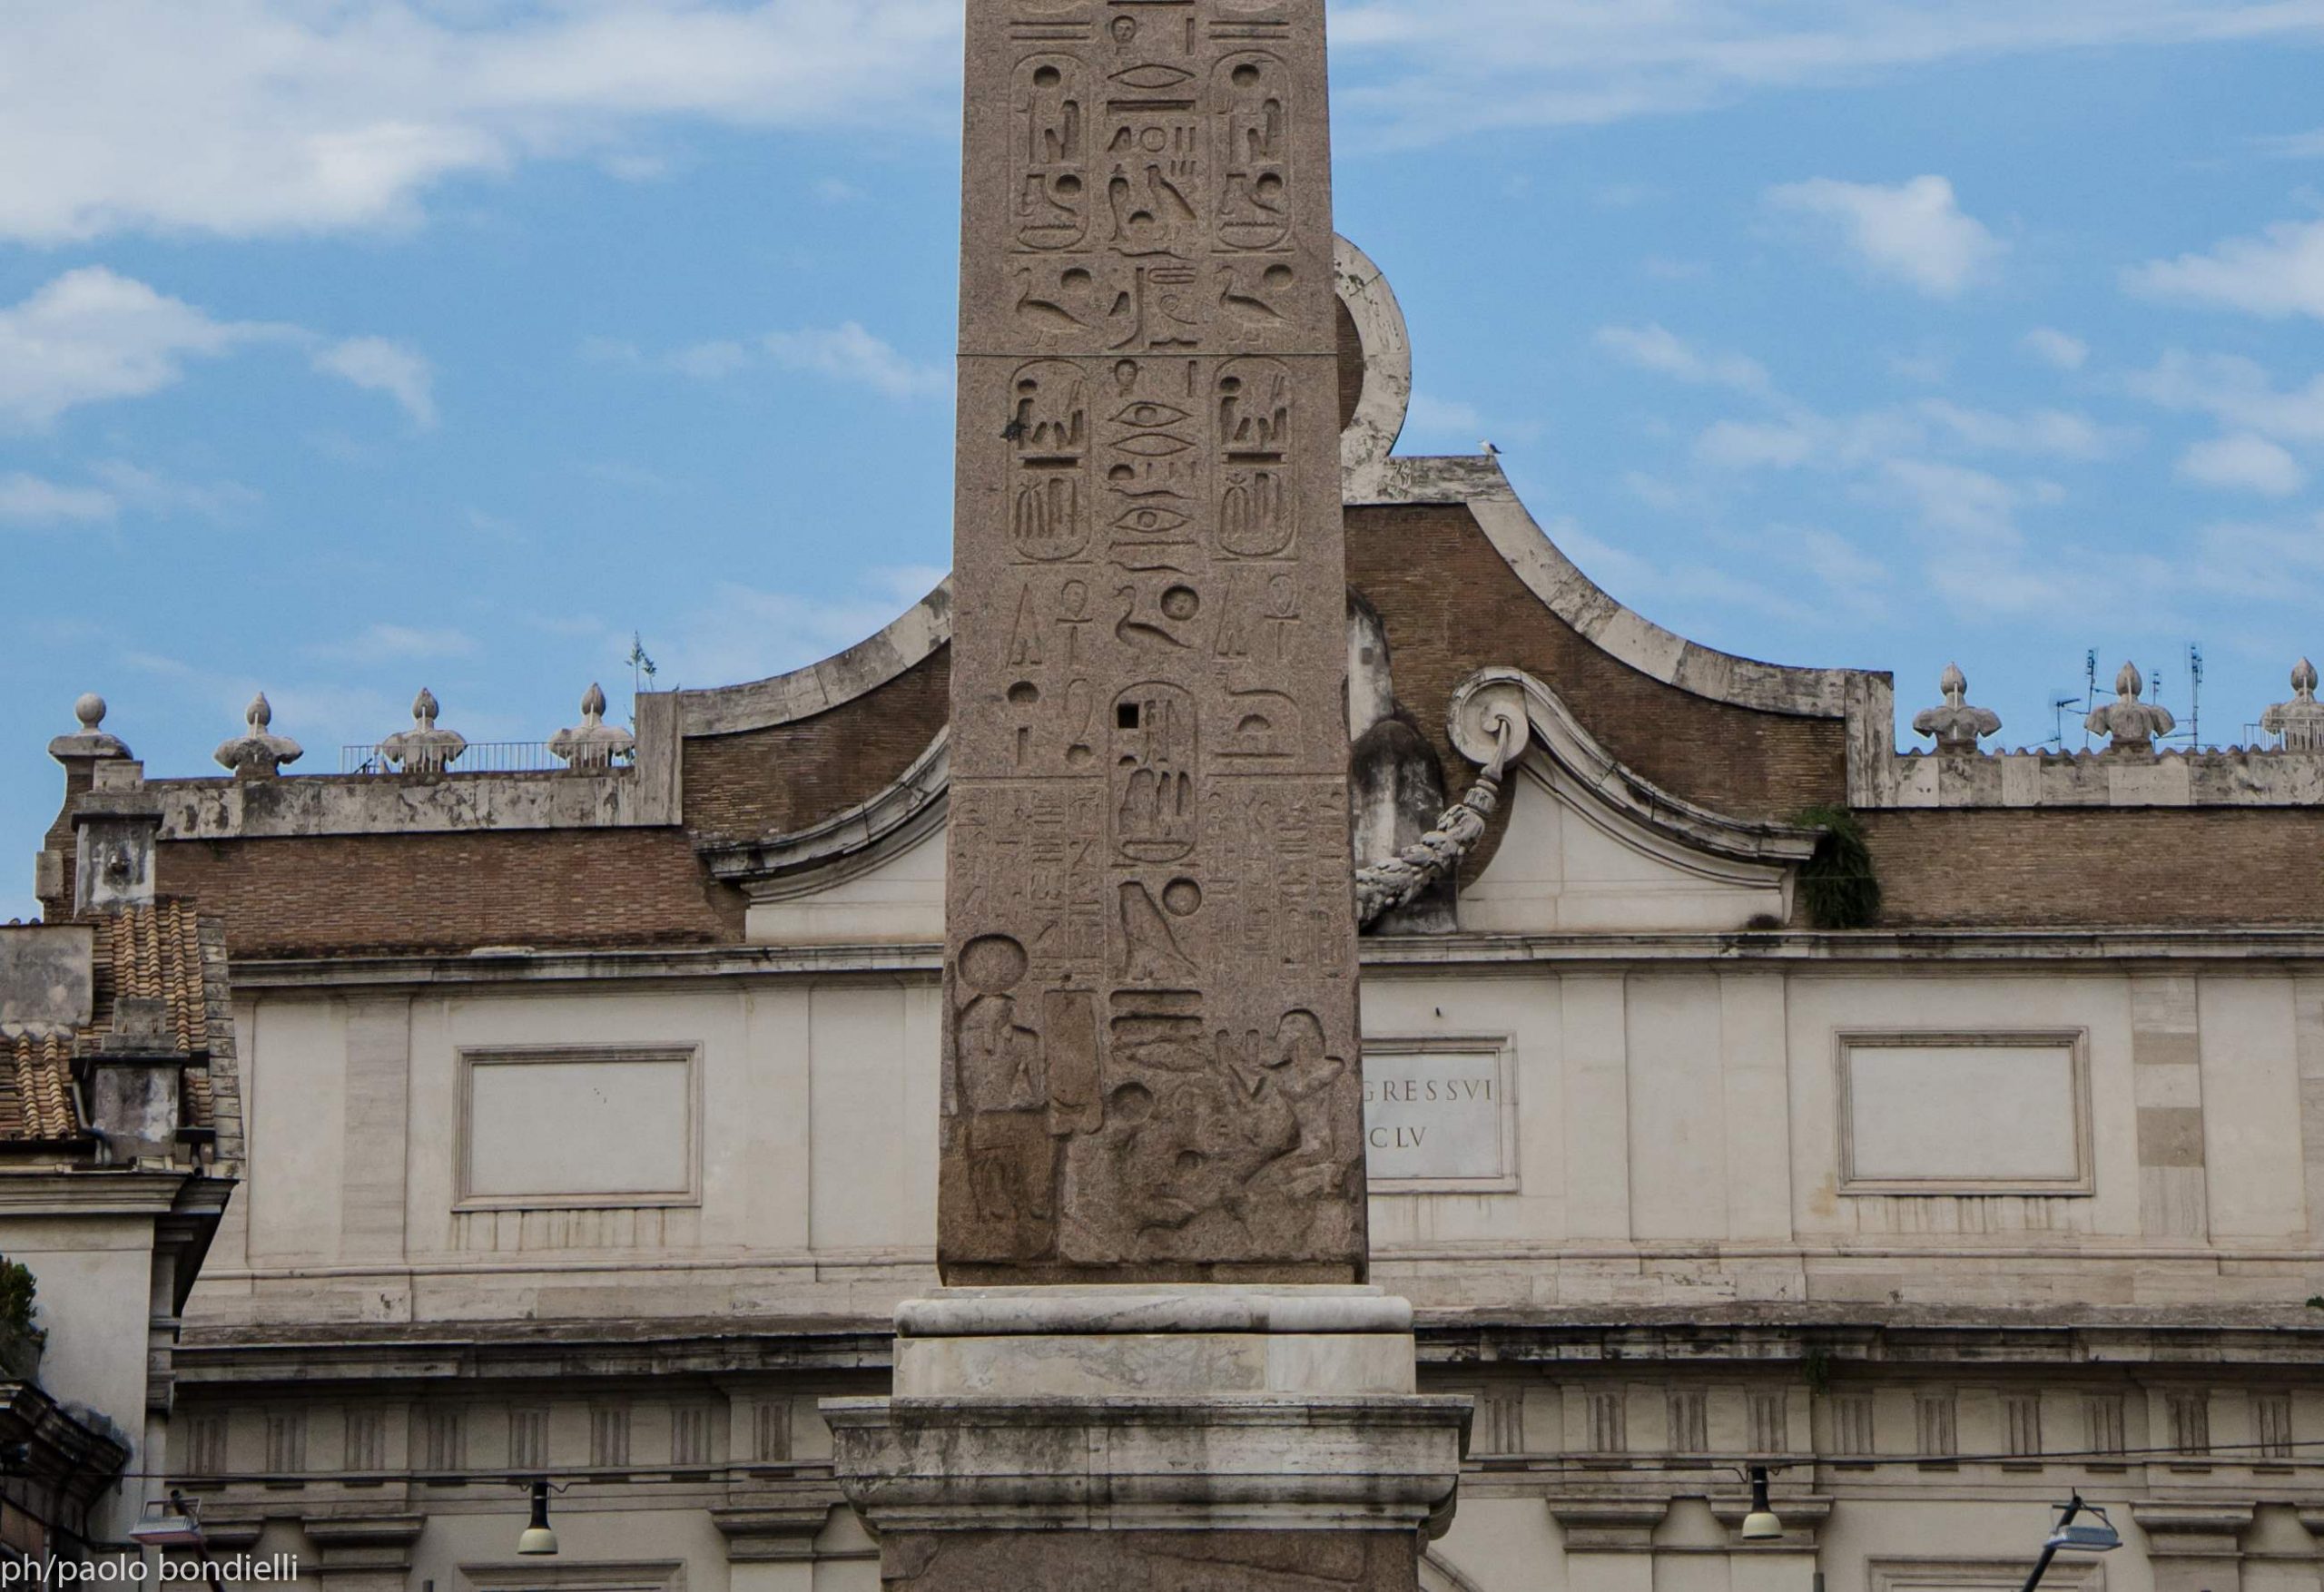 Dettaglio dell'obelisco flaminio con parte della titolatura di Ramesse II